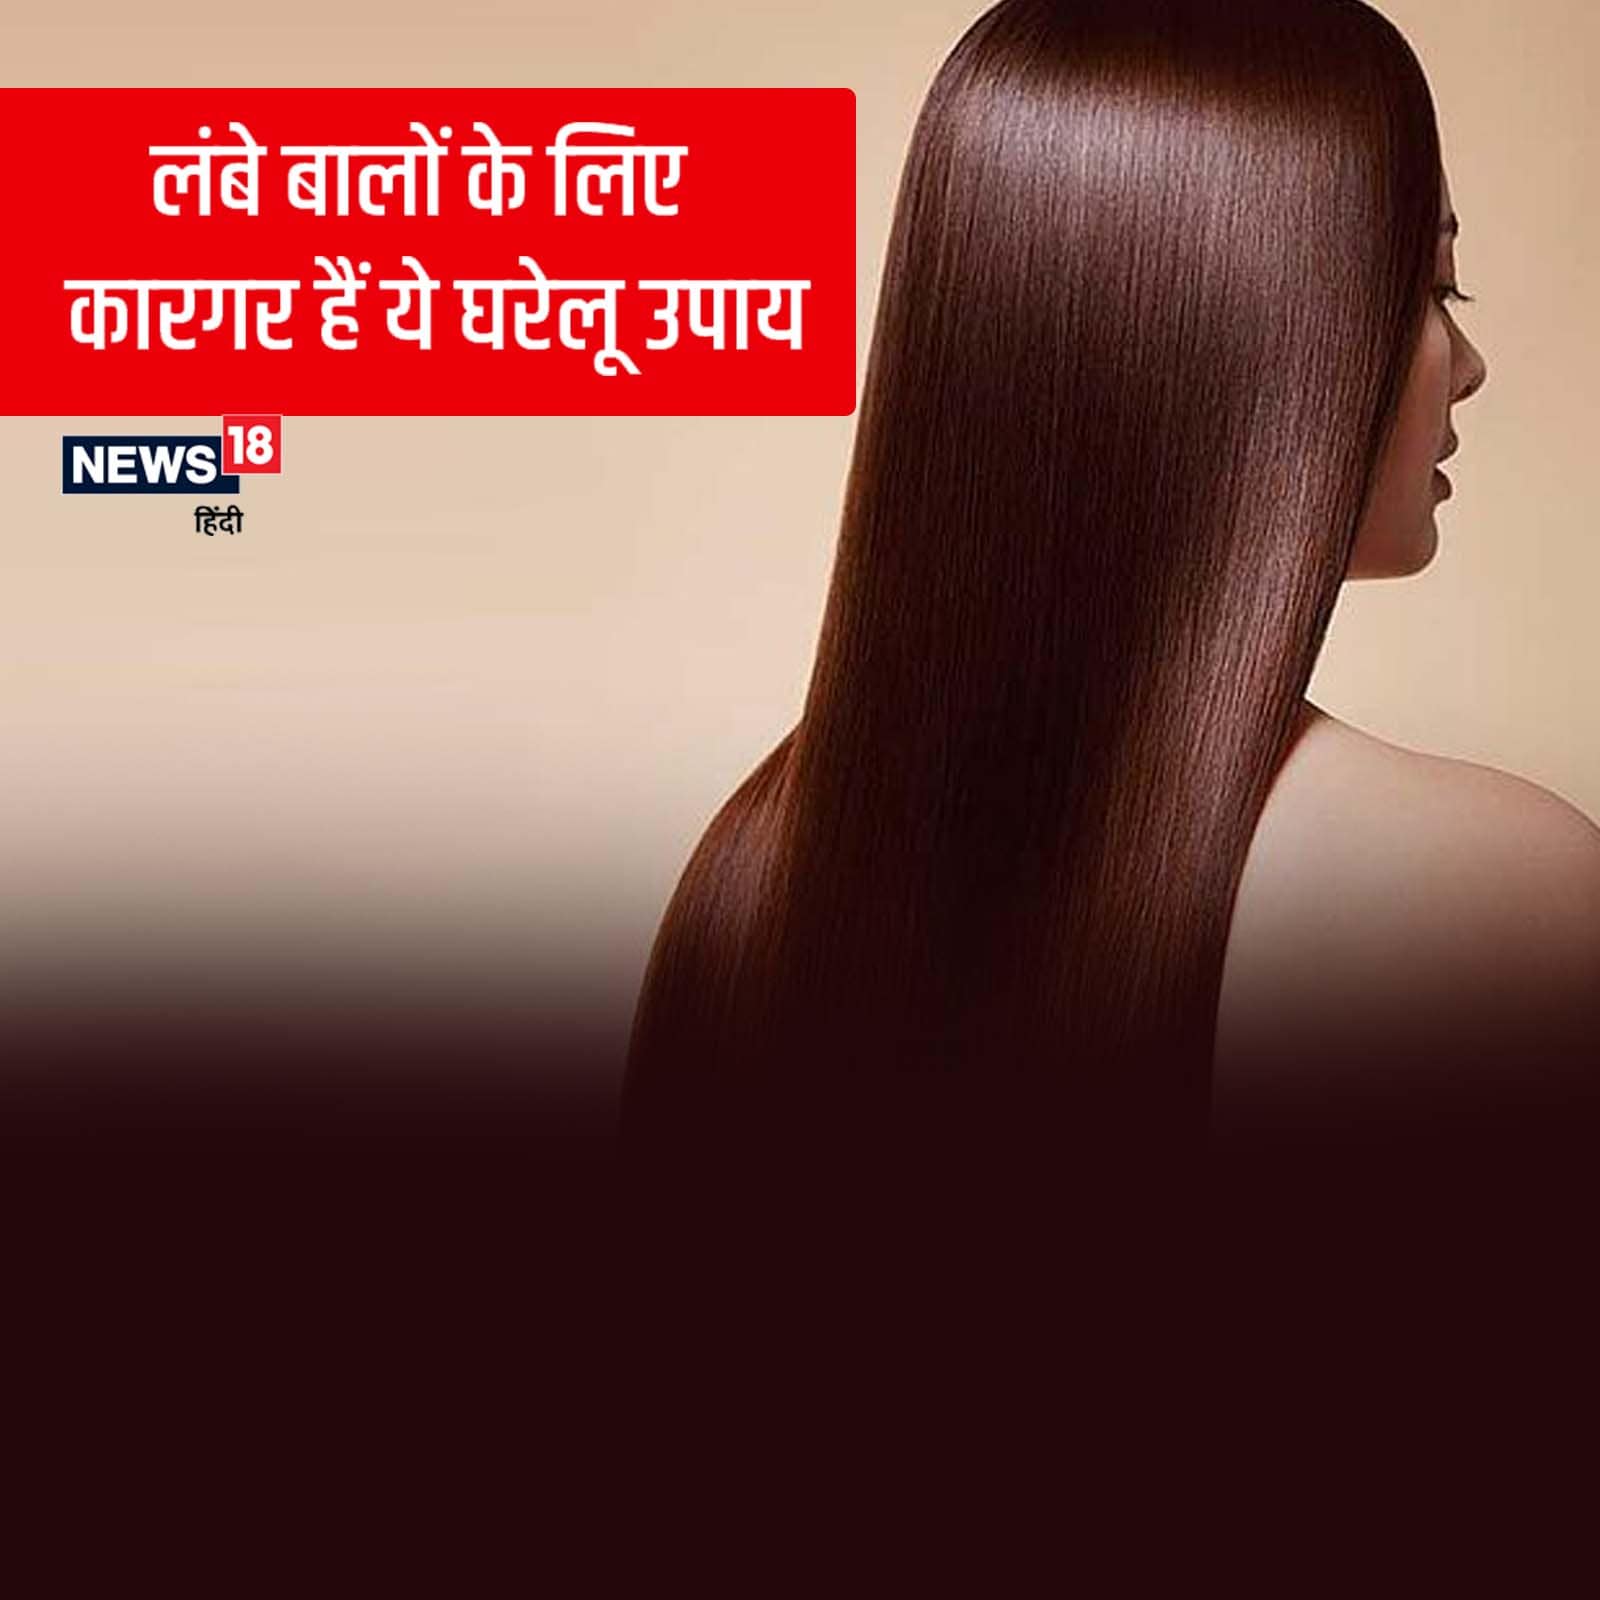 Natural home remedies for fast hair growth in hindi pra - कमर तक लंबा करना  चाहती हैं बालों को, तो ये घरेलू नुस्‍खे आएंगे बहुत काम – News18 हिंदी